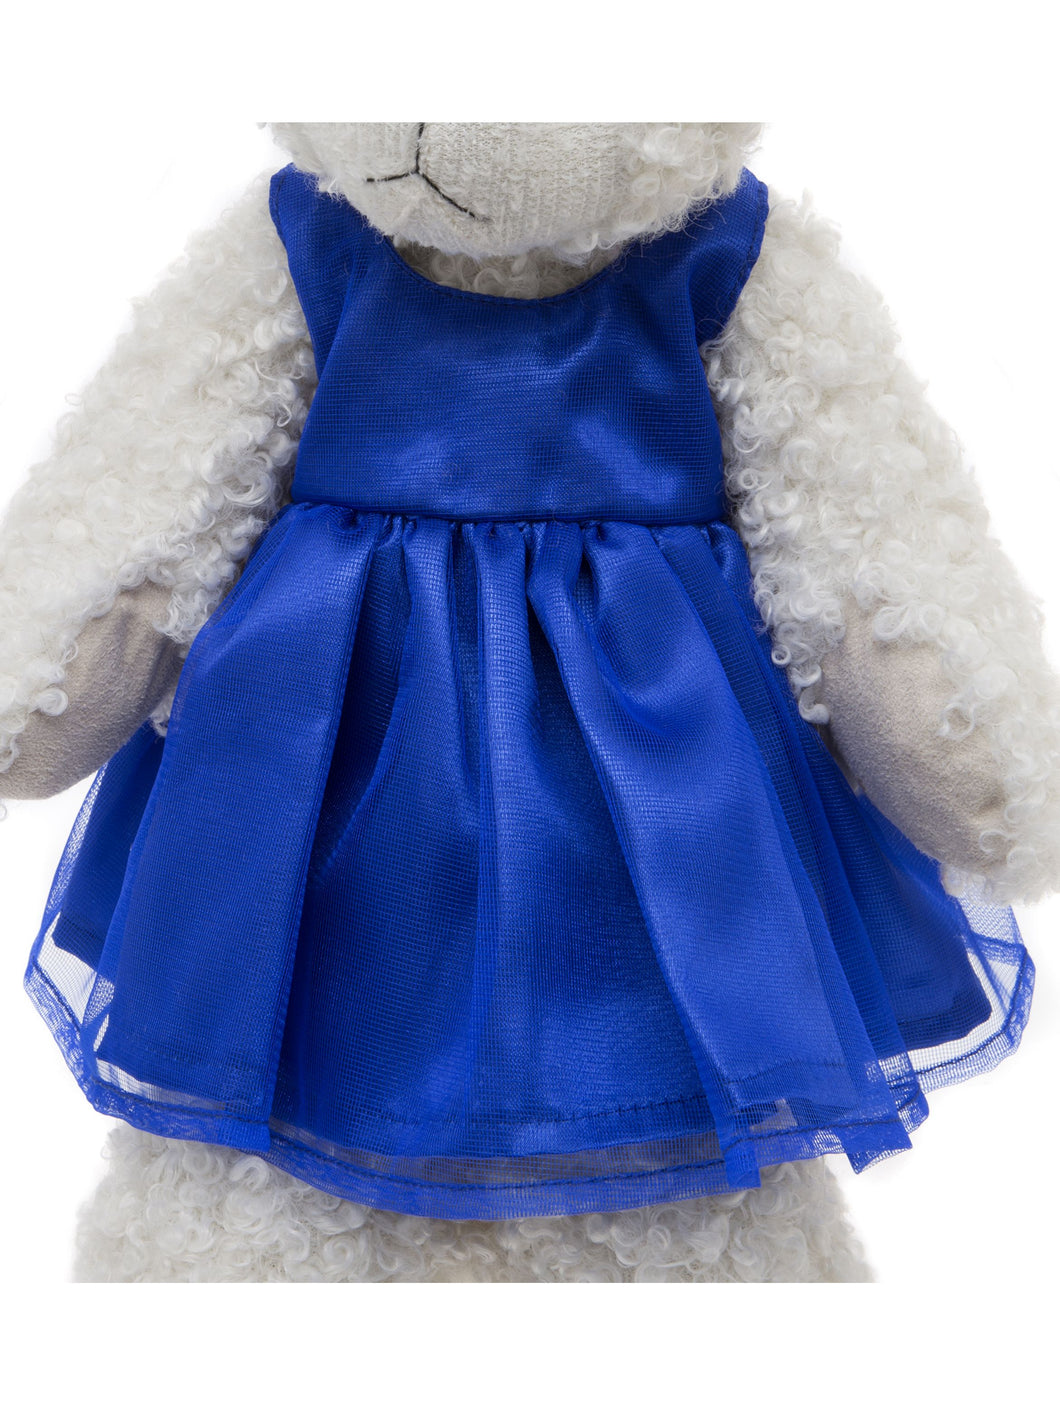 Teddy bear clothes charlie bears Australia 